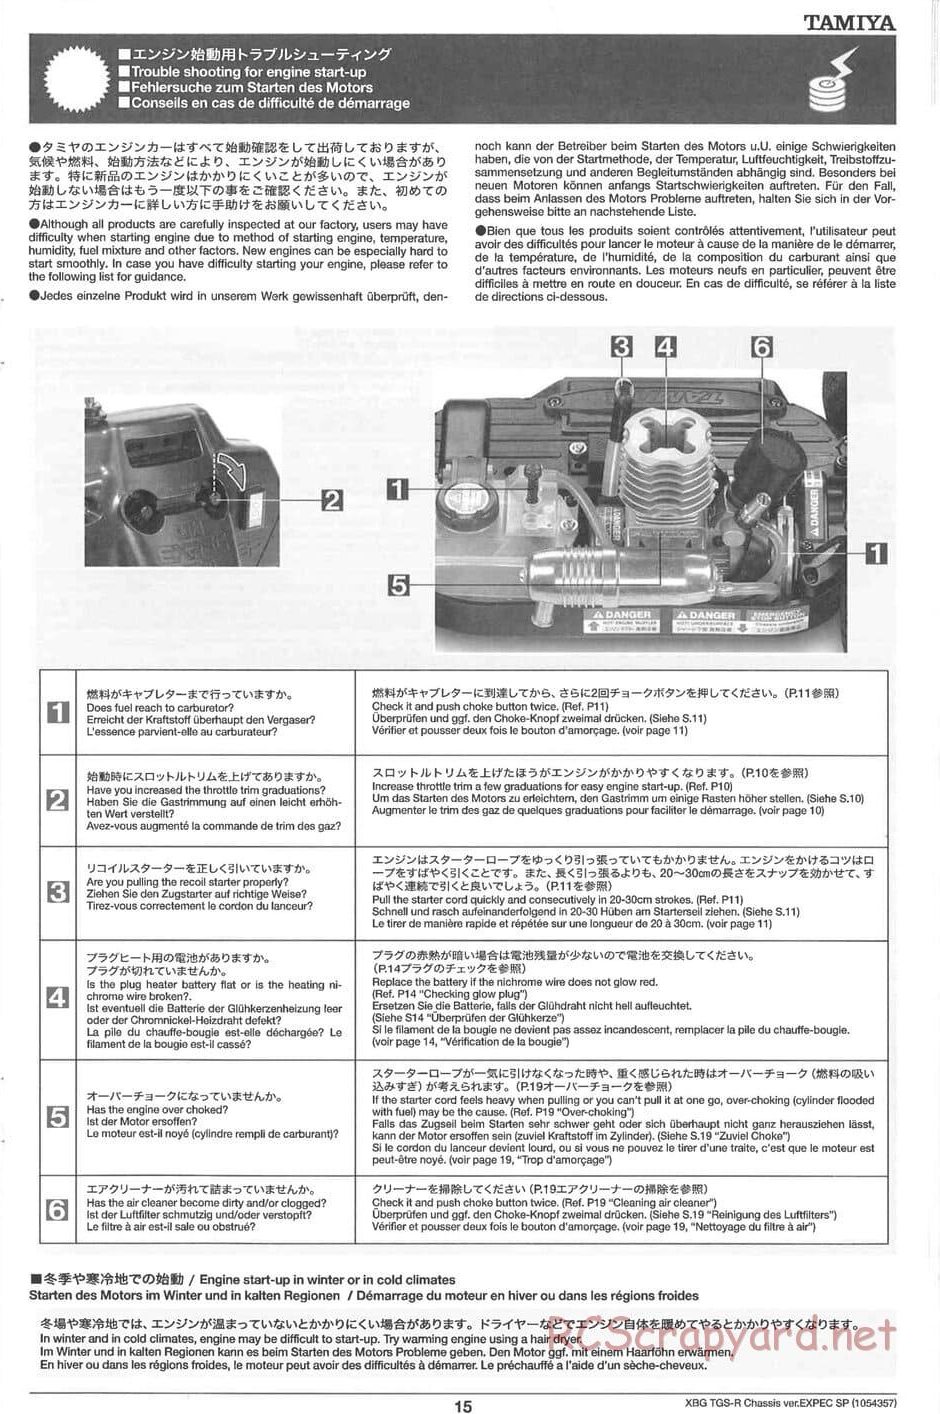 Tamiya - TGS-R Chassis - Manual - Page 15